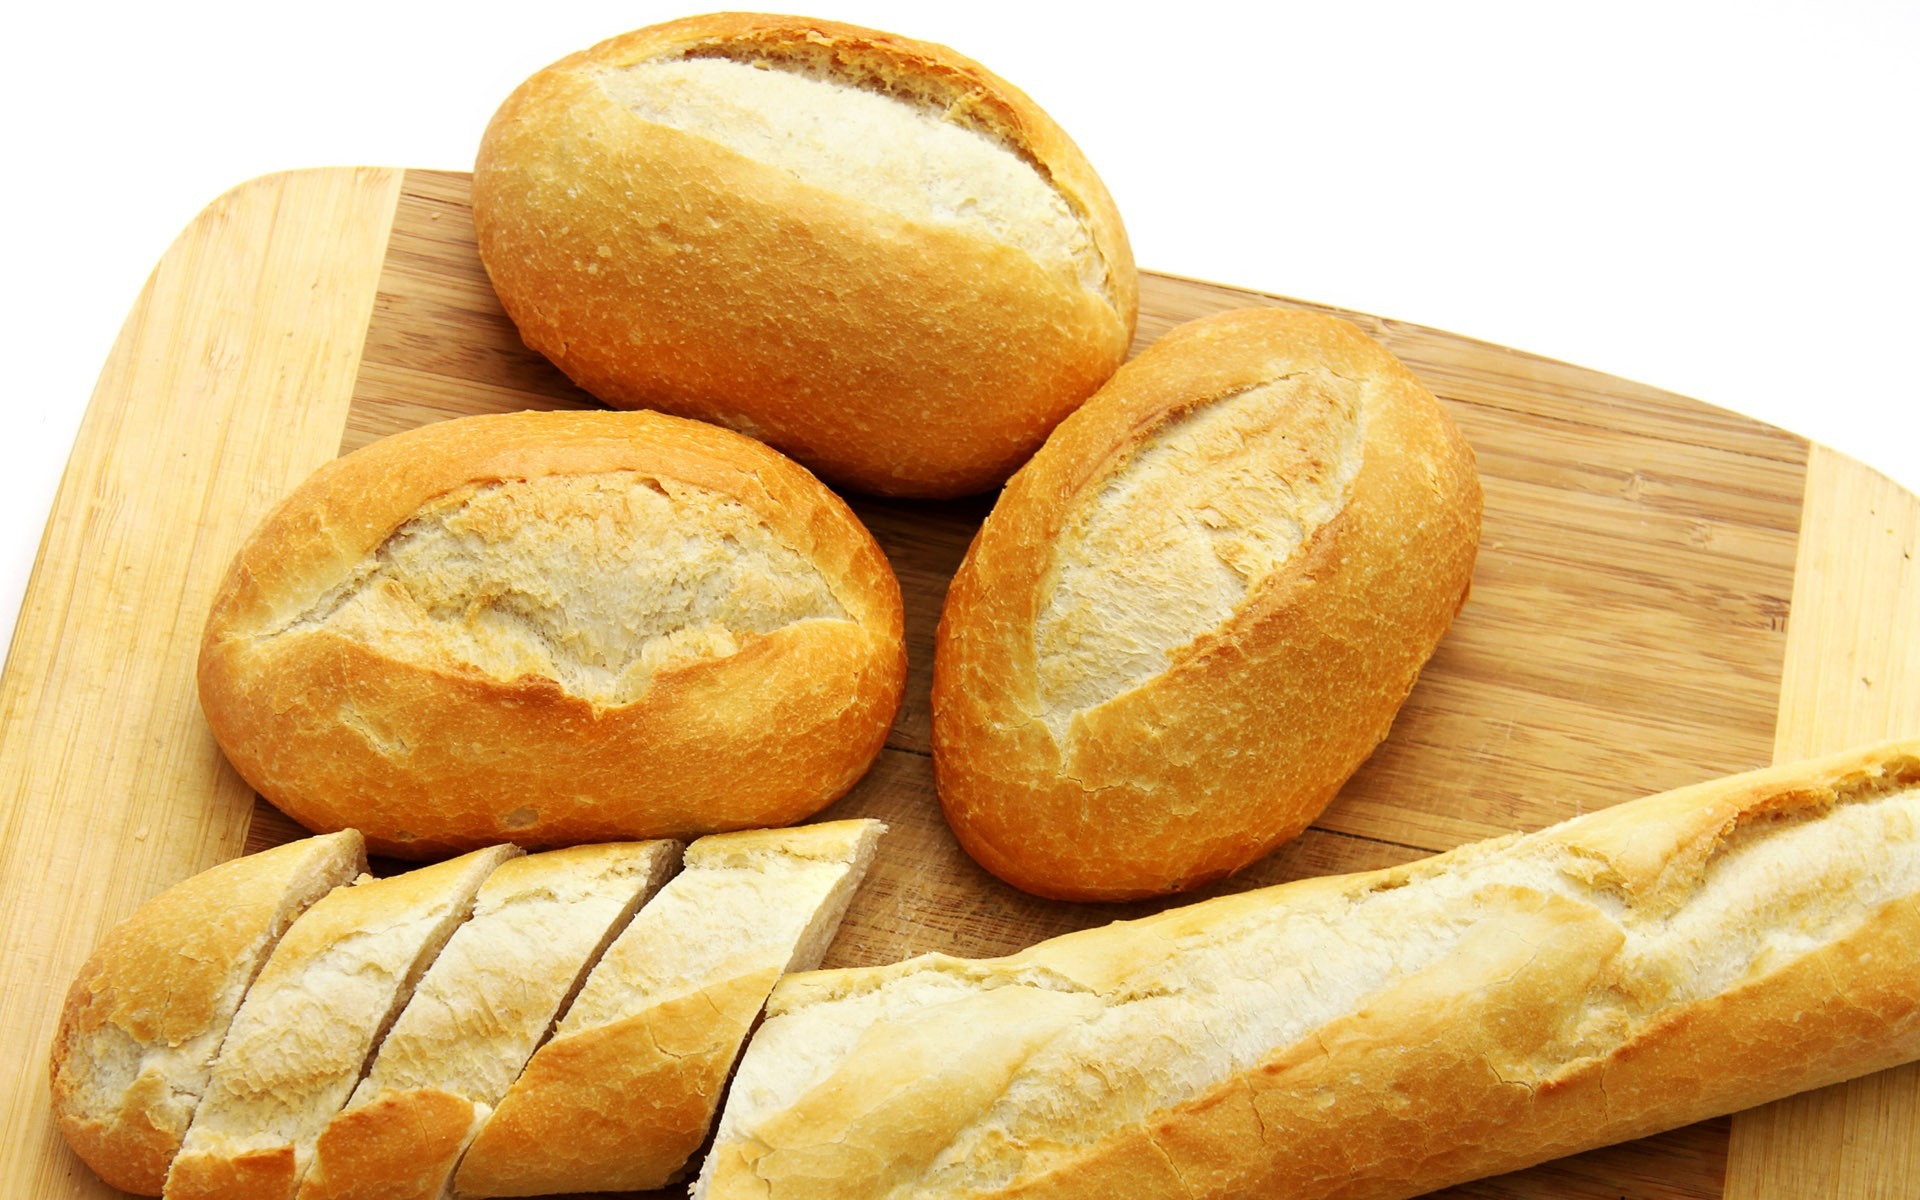 Ekmek satışı ‘ruhsata’ bağlanacak